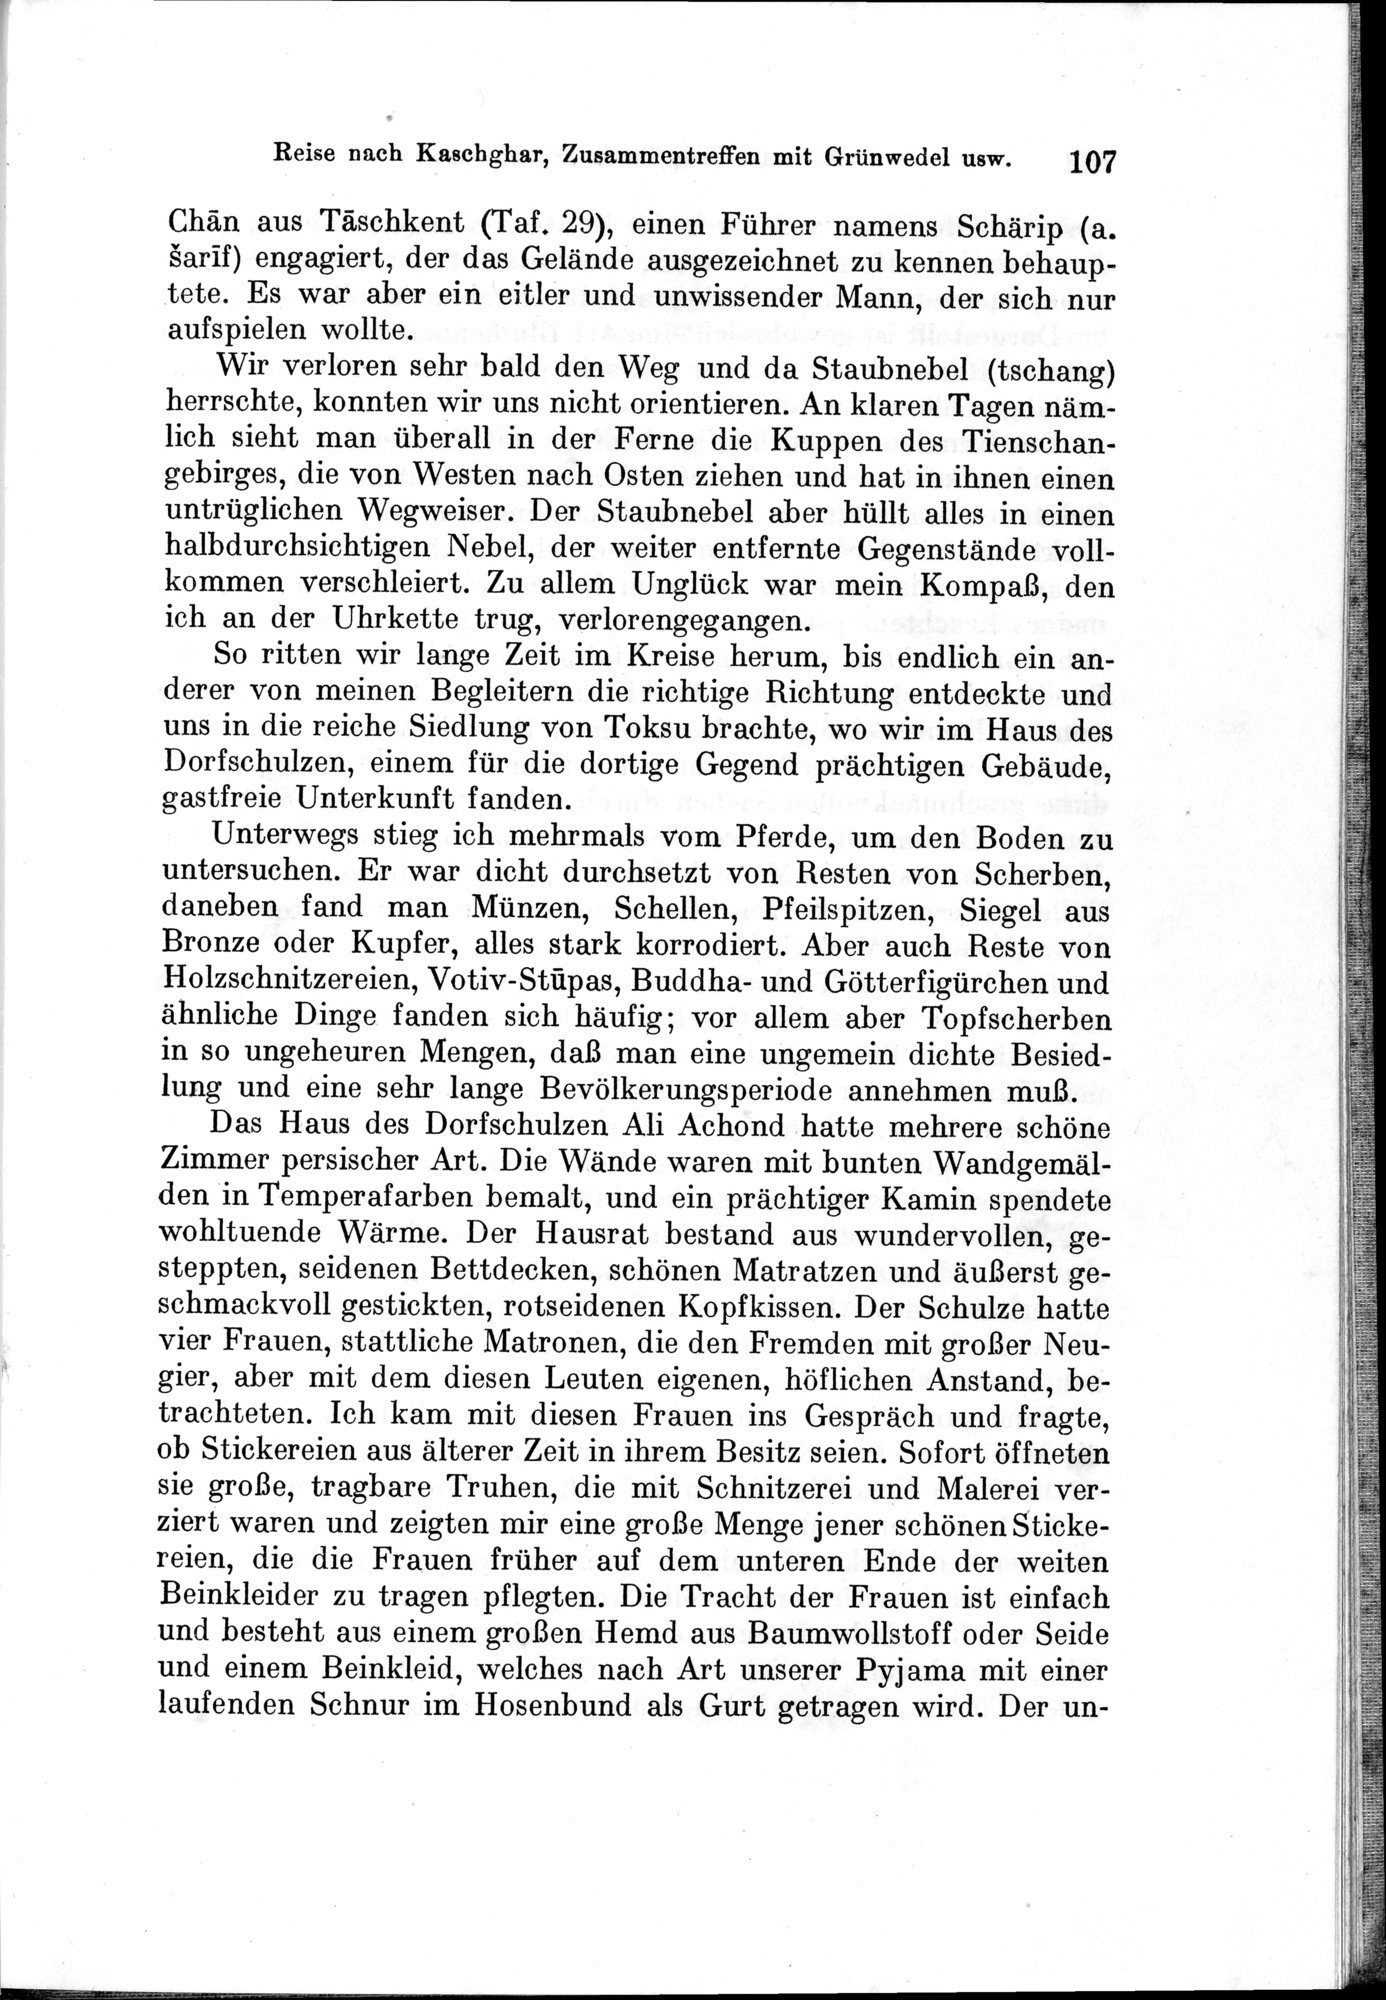 Auf Hellas Spuren in Ostturkistan : vol.1 / Page 157 (Grayscale High Resolution Image)